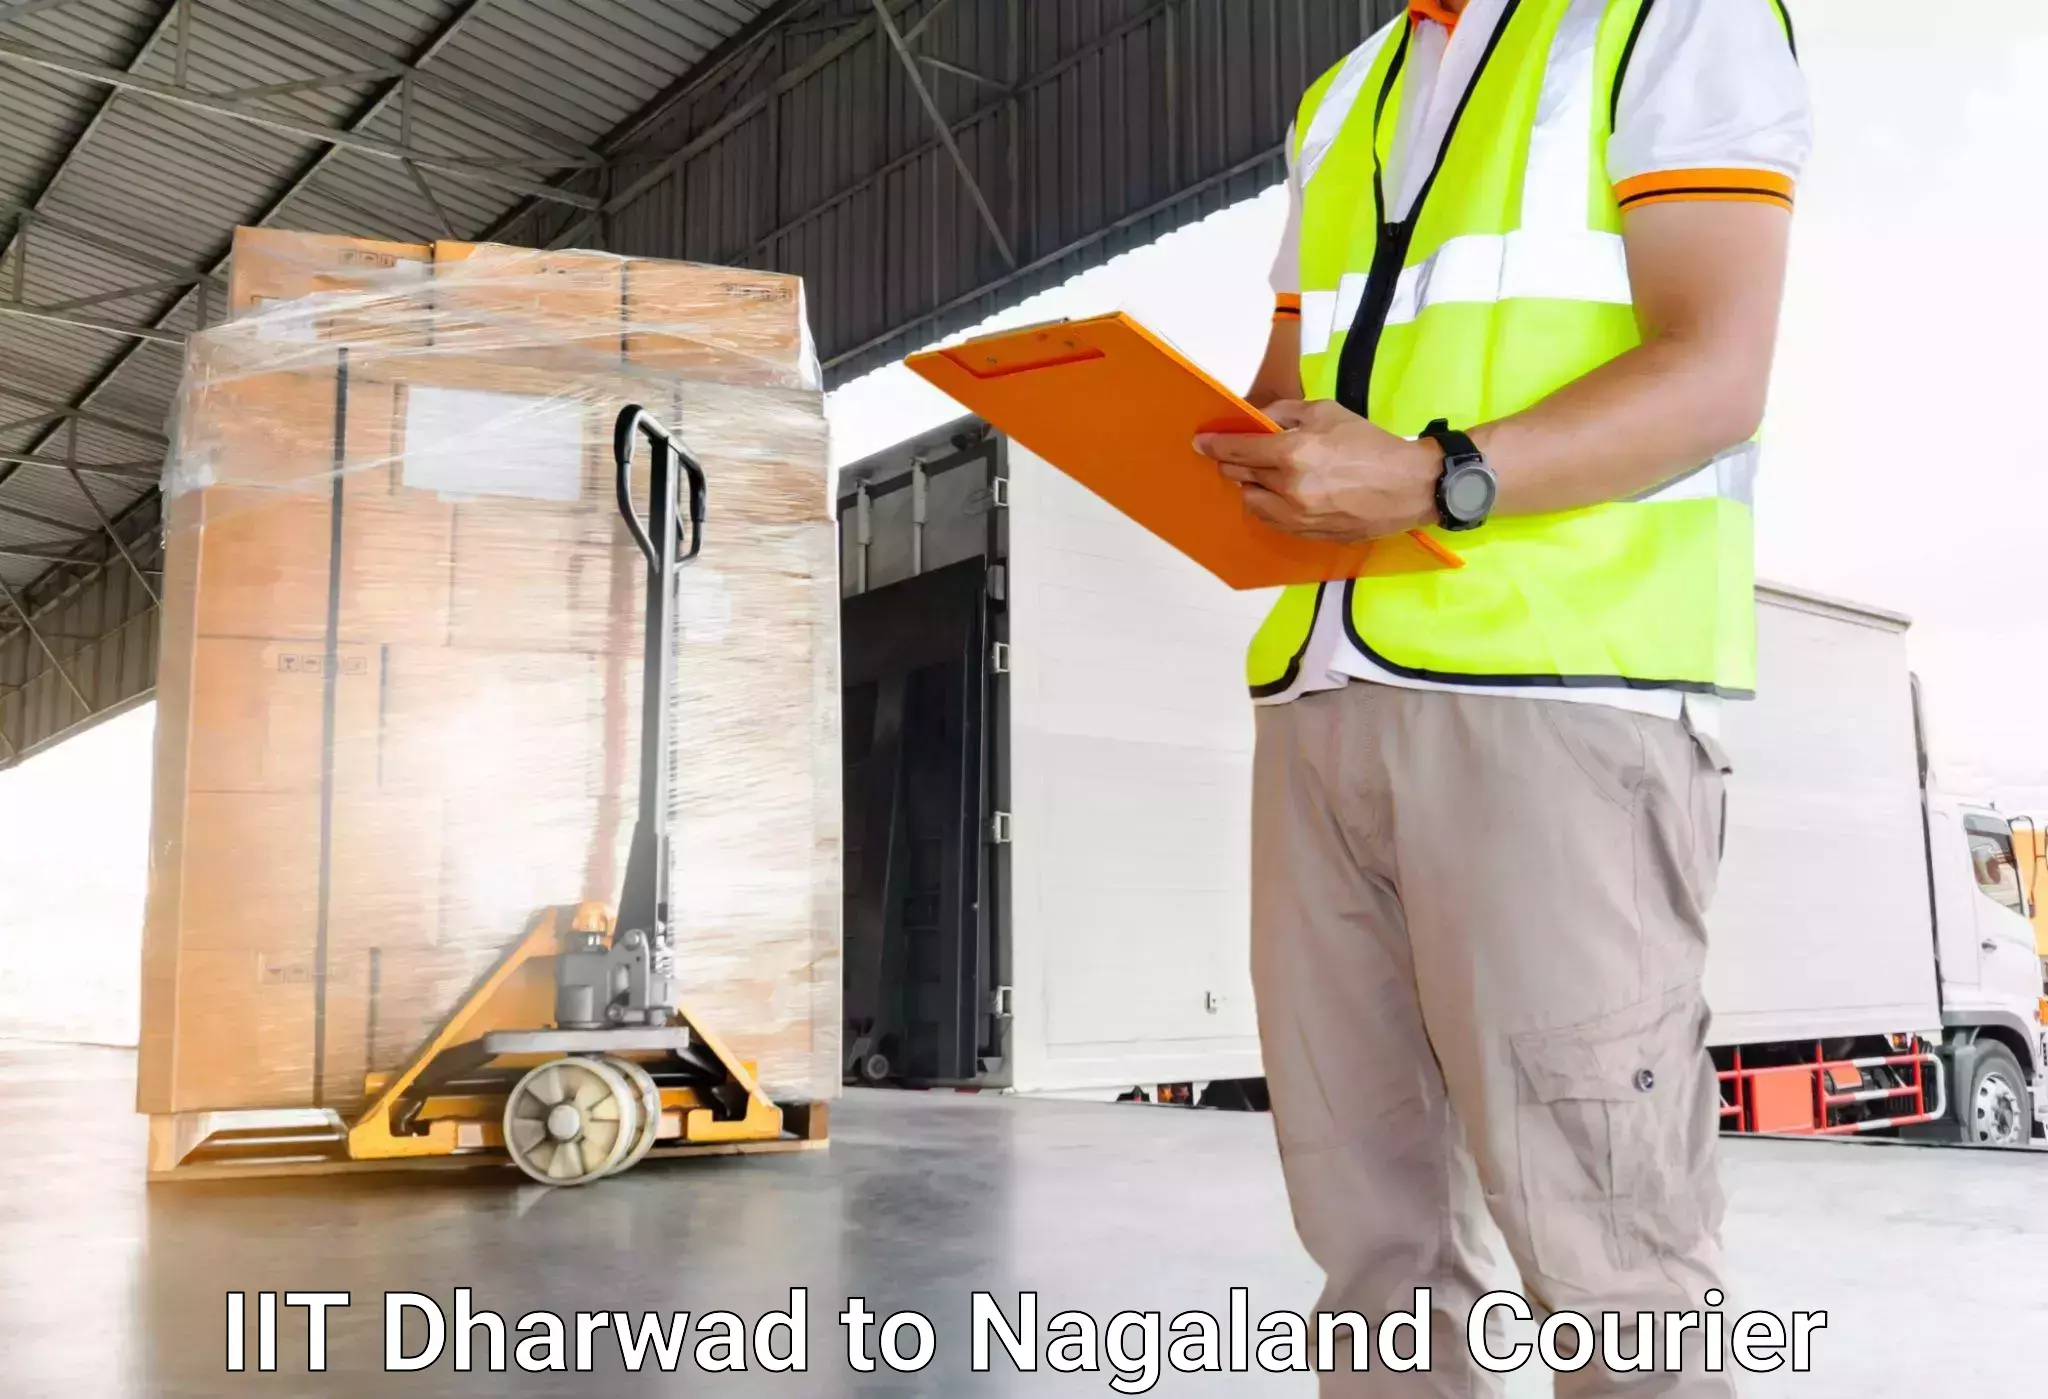 Luggage delivery network IIT Dharwad to Kohima